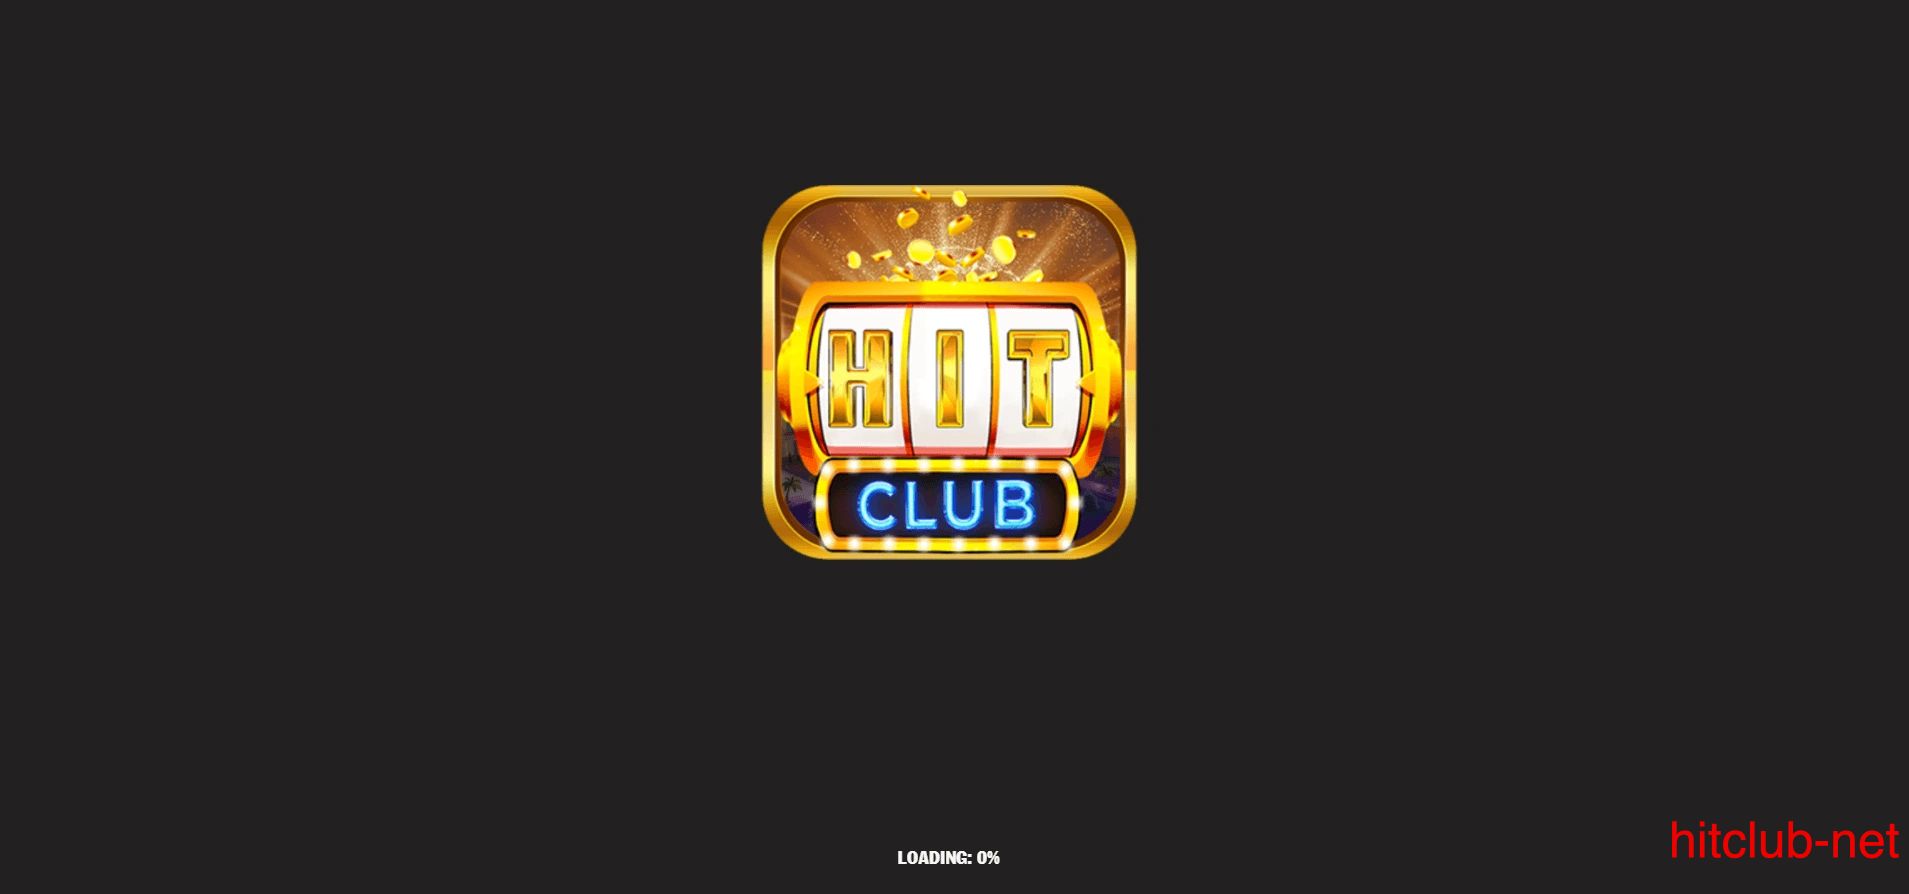 Dịch vụ Hit Club có gì mà hấp dẫn đến vậy?